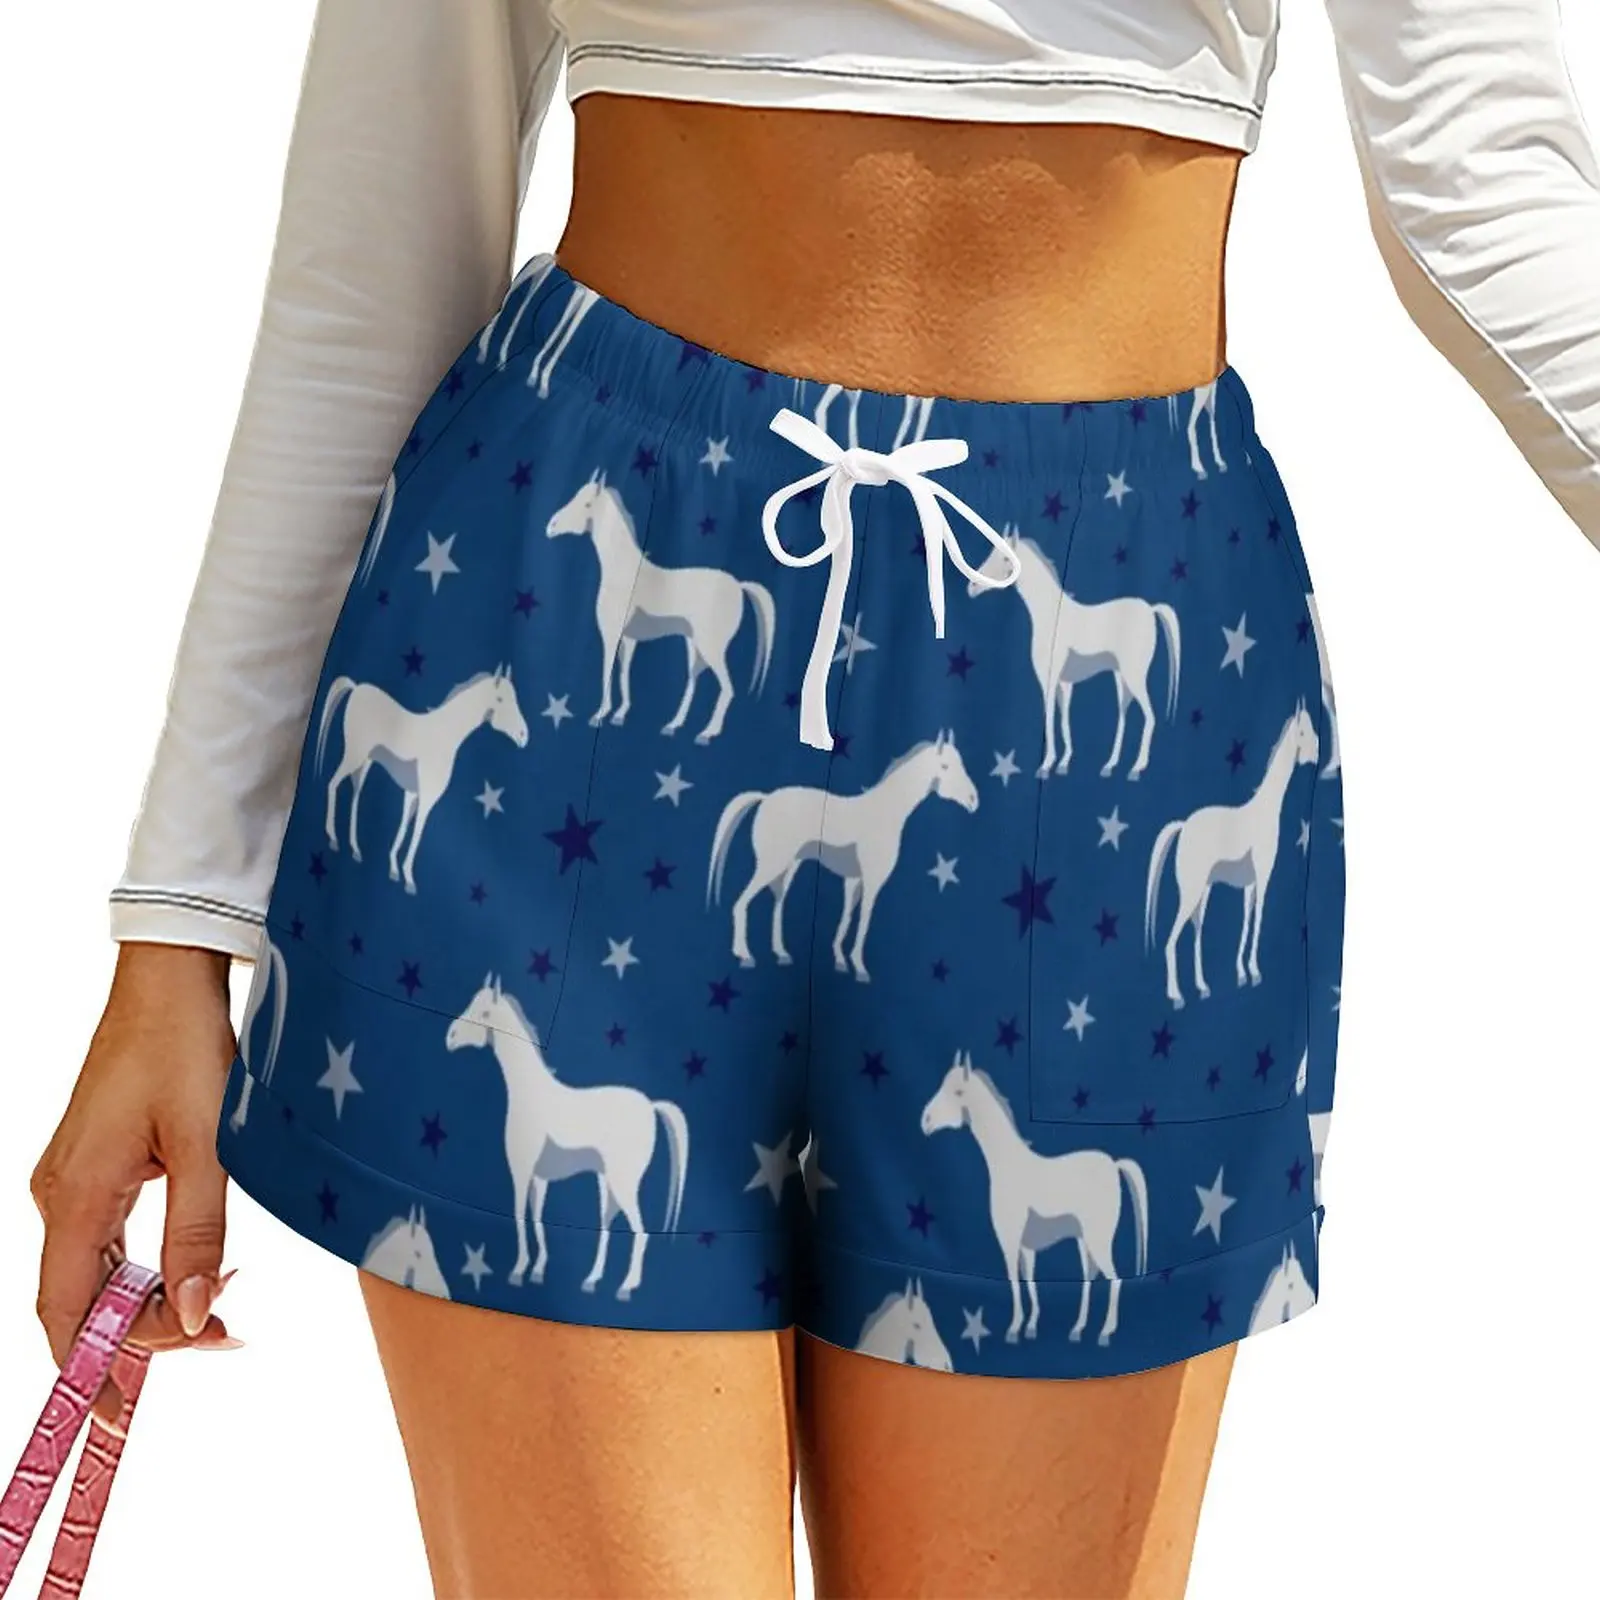 Pantalones cortos blancos con estampado de estrellas y caballos para mujer, Shorts informales de talla grande, elegantes, para verano